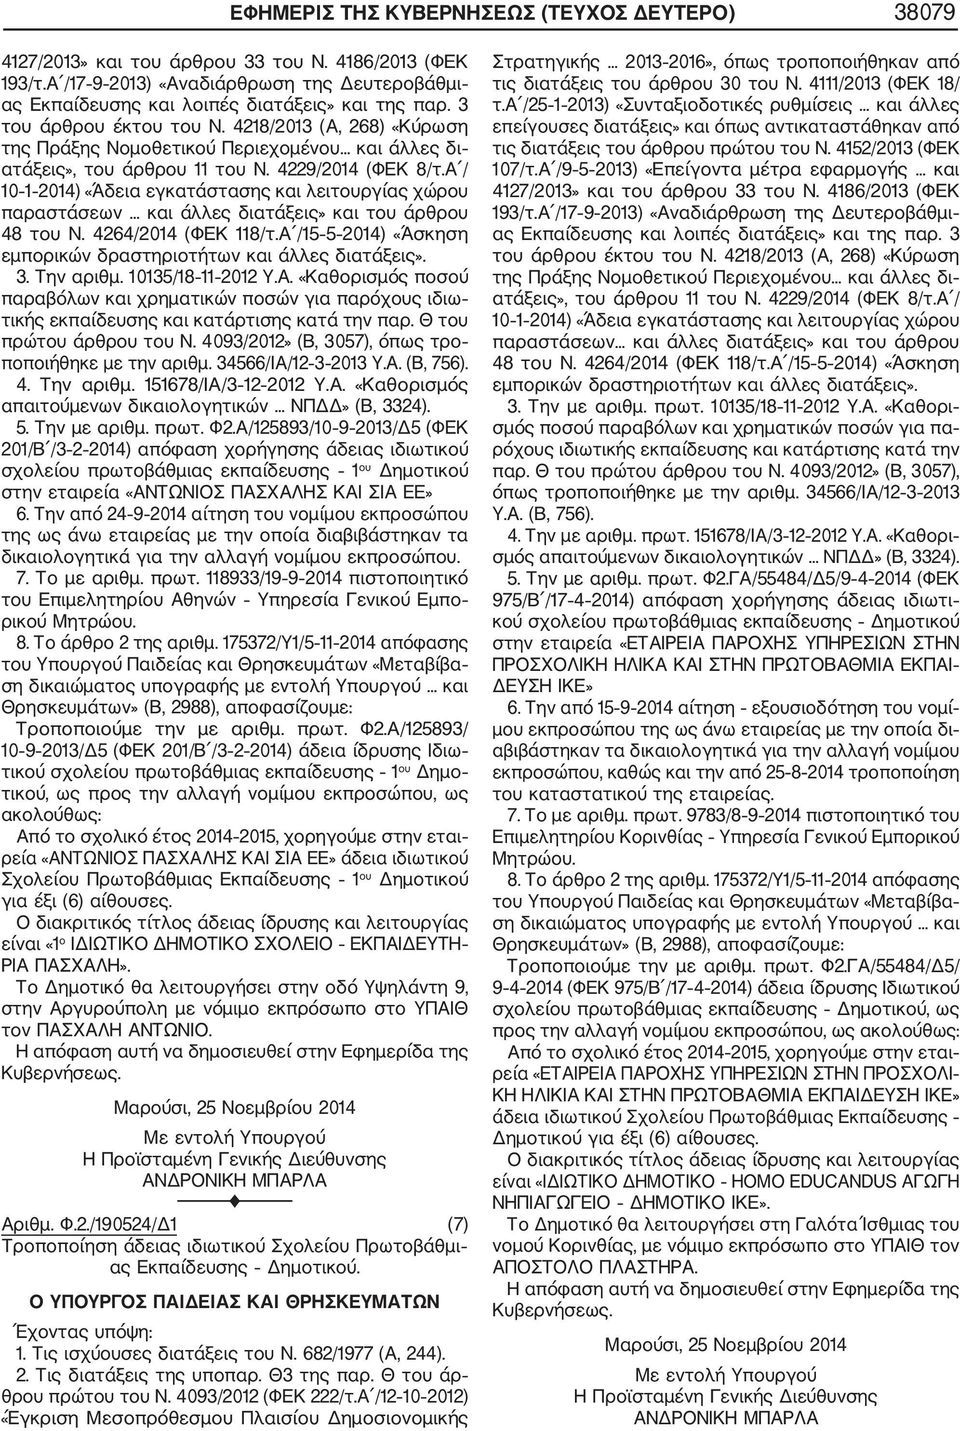 Α / 10 1 2014) «Άδεια εγκατάστασης και λειτουργίας χώρου παραστάσεων... και άλλες διατάξεις» και του άρθρου 48 του Ν. 4264/2014 (ΦΕΚ 118/τ.